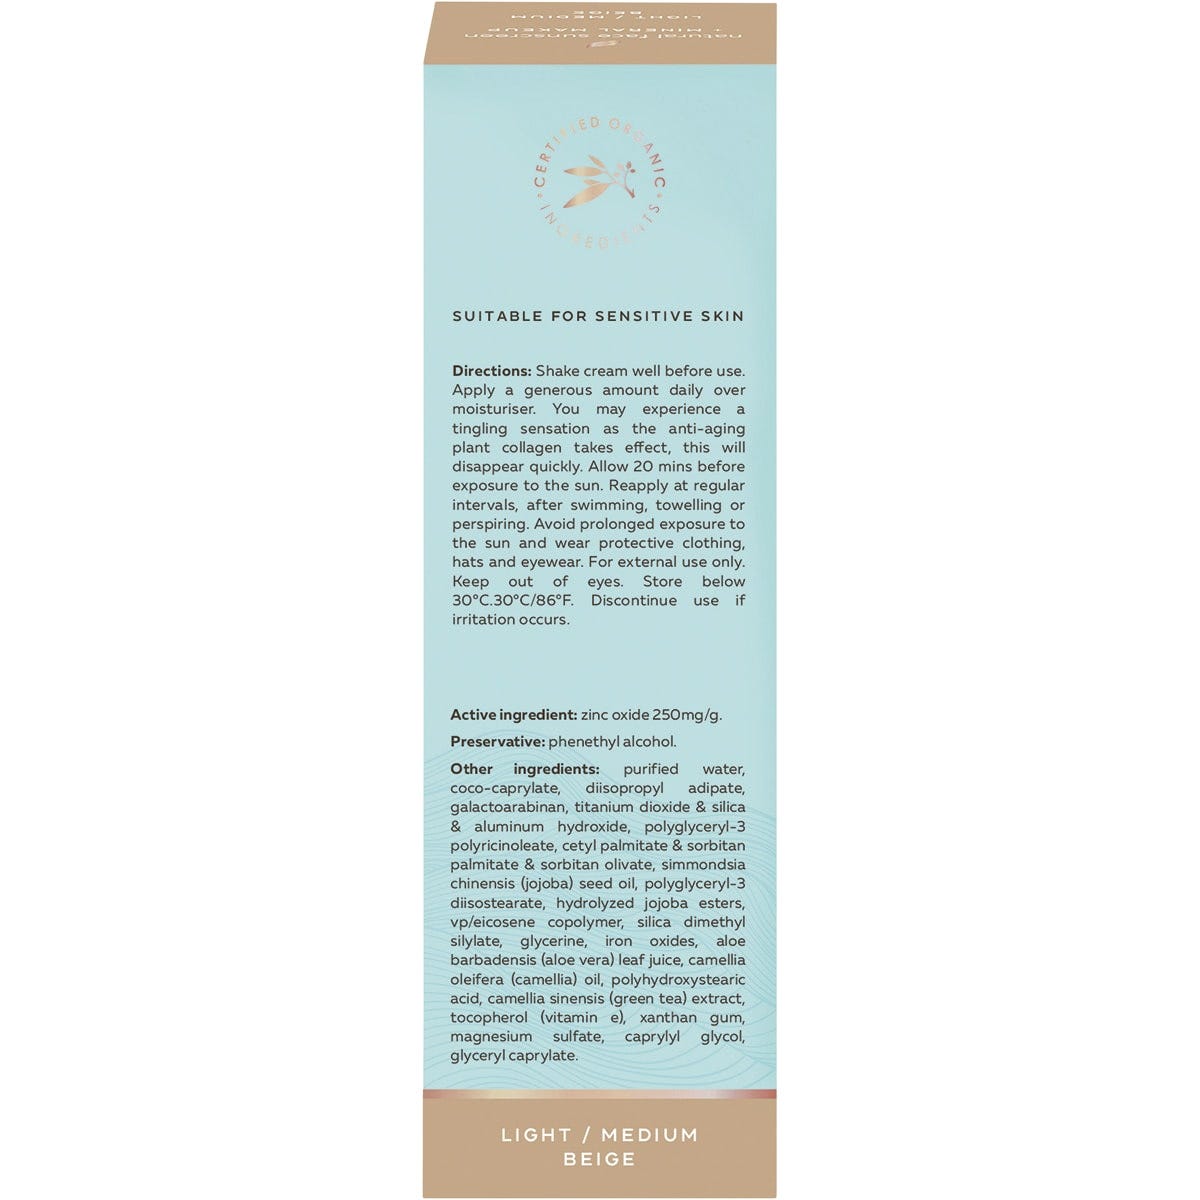 Wotnot Natural Face Sunscreen 40 SPF Beige BB Cream